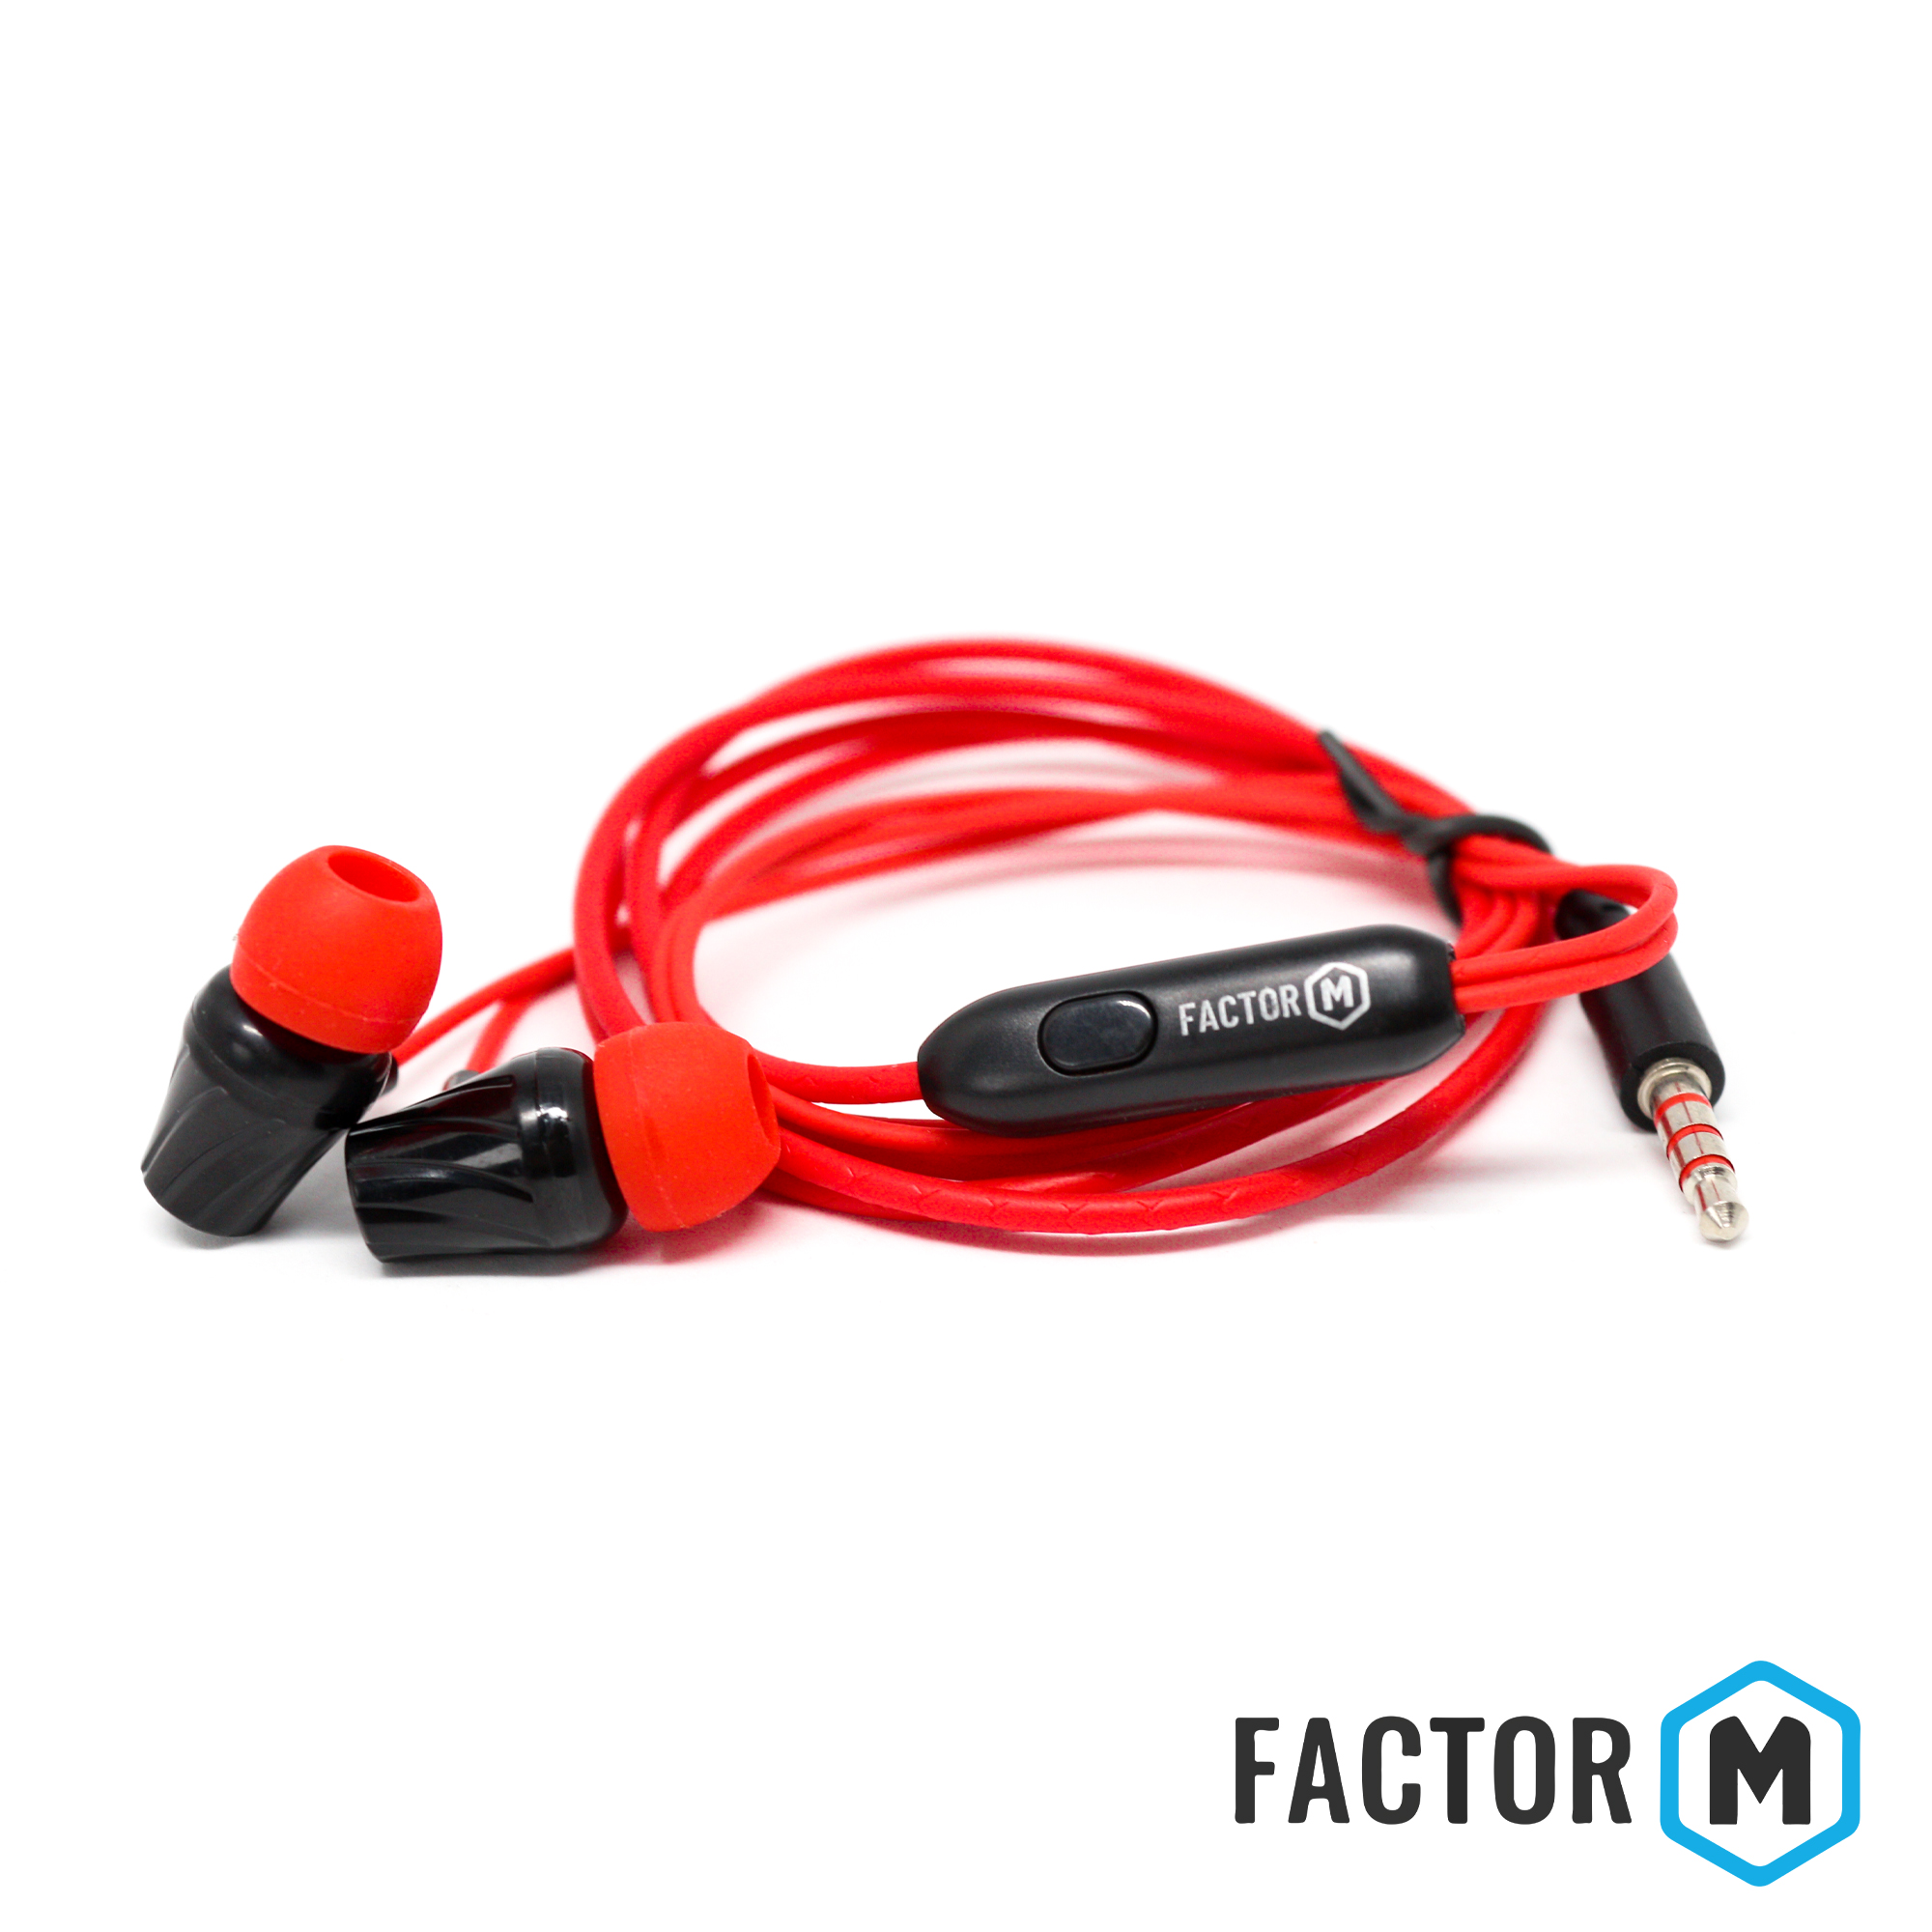 Factor M FM­03 Kulakiçi Mikrofonlu Kablolu Kulaklık Kırmızı (FM­FM03KK)